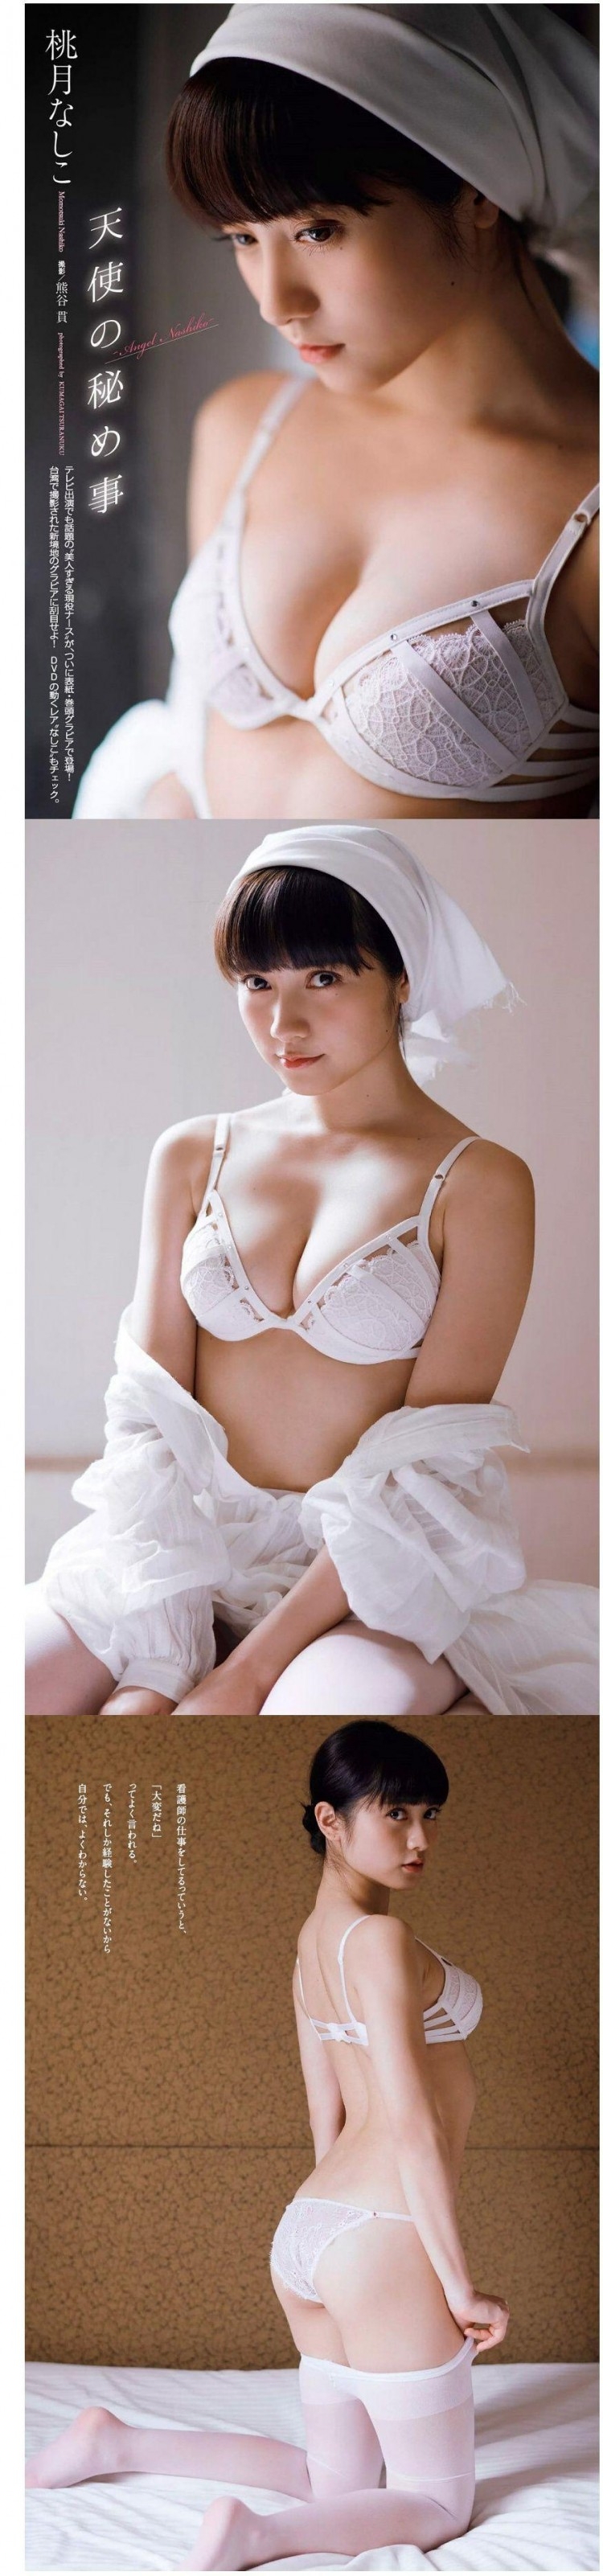 미녀 간호사 모모츠키 나시코 흰 브라 큰 가슴